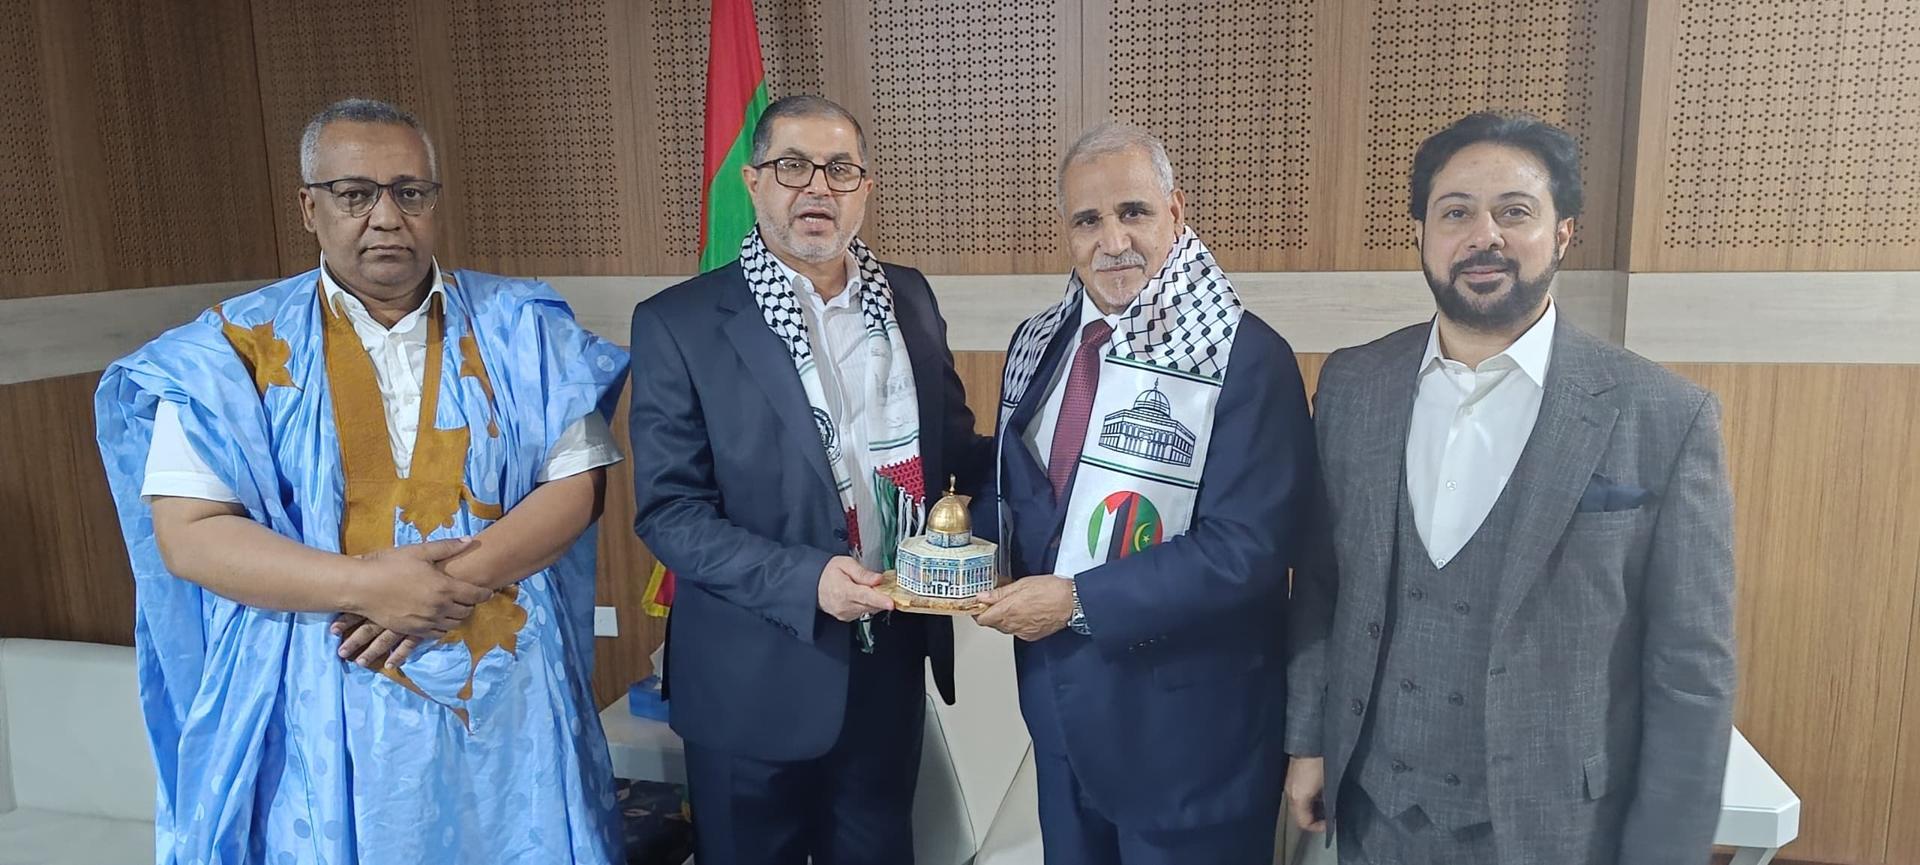 وفد من حركة حماس يلتقي مسؤولين وسياسيين في نواكشوط (صور)